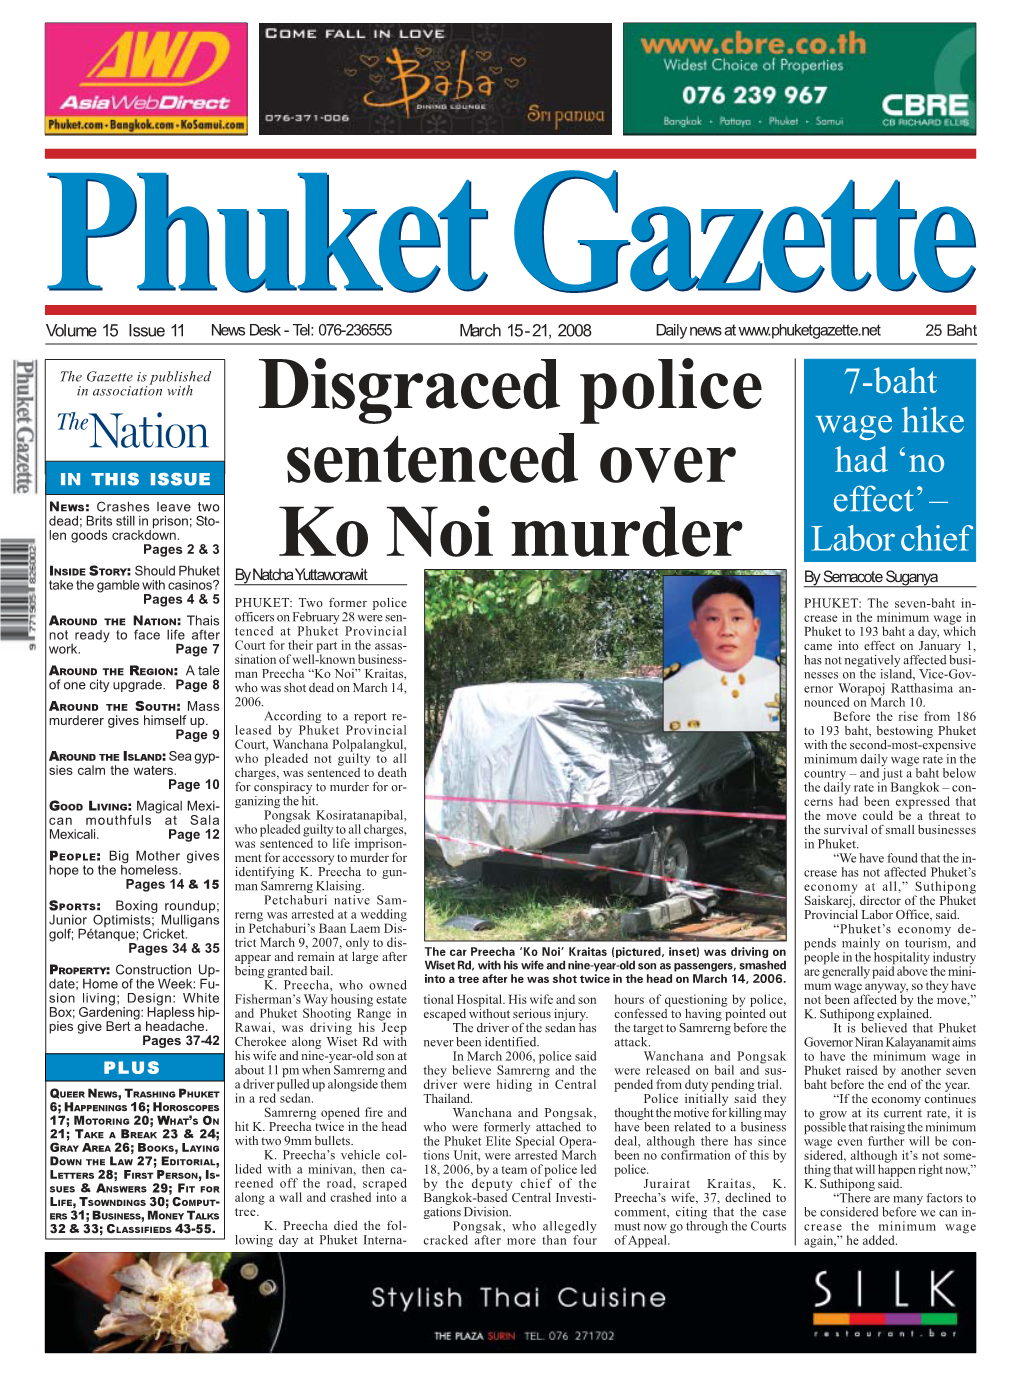 Disgraced Police Sentenced Over Ko Noi Murder